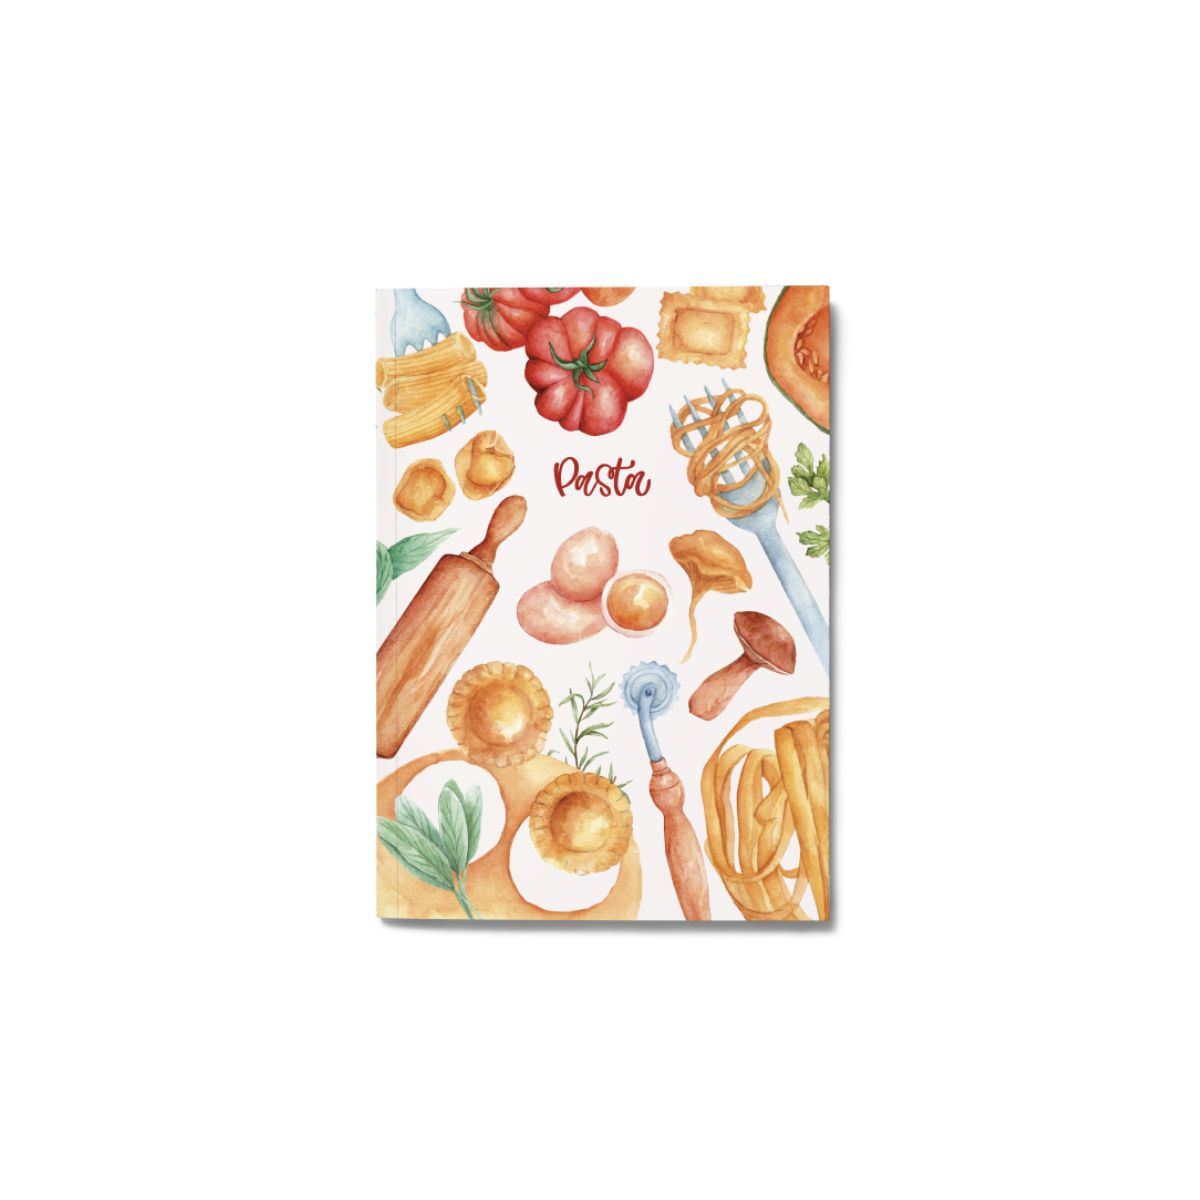 Ricettario/Recipe Notebook - Pasta